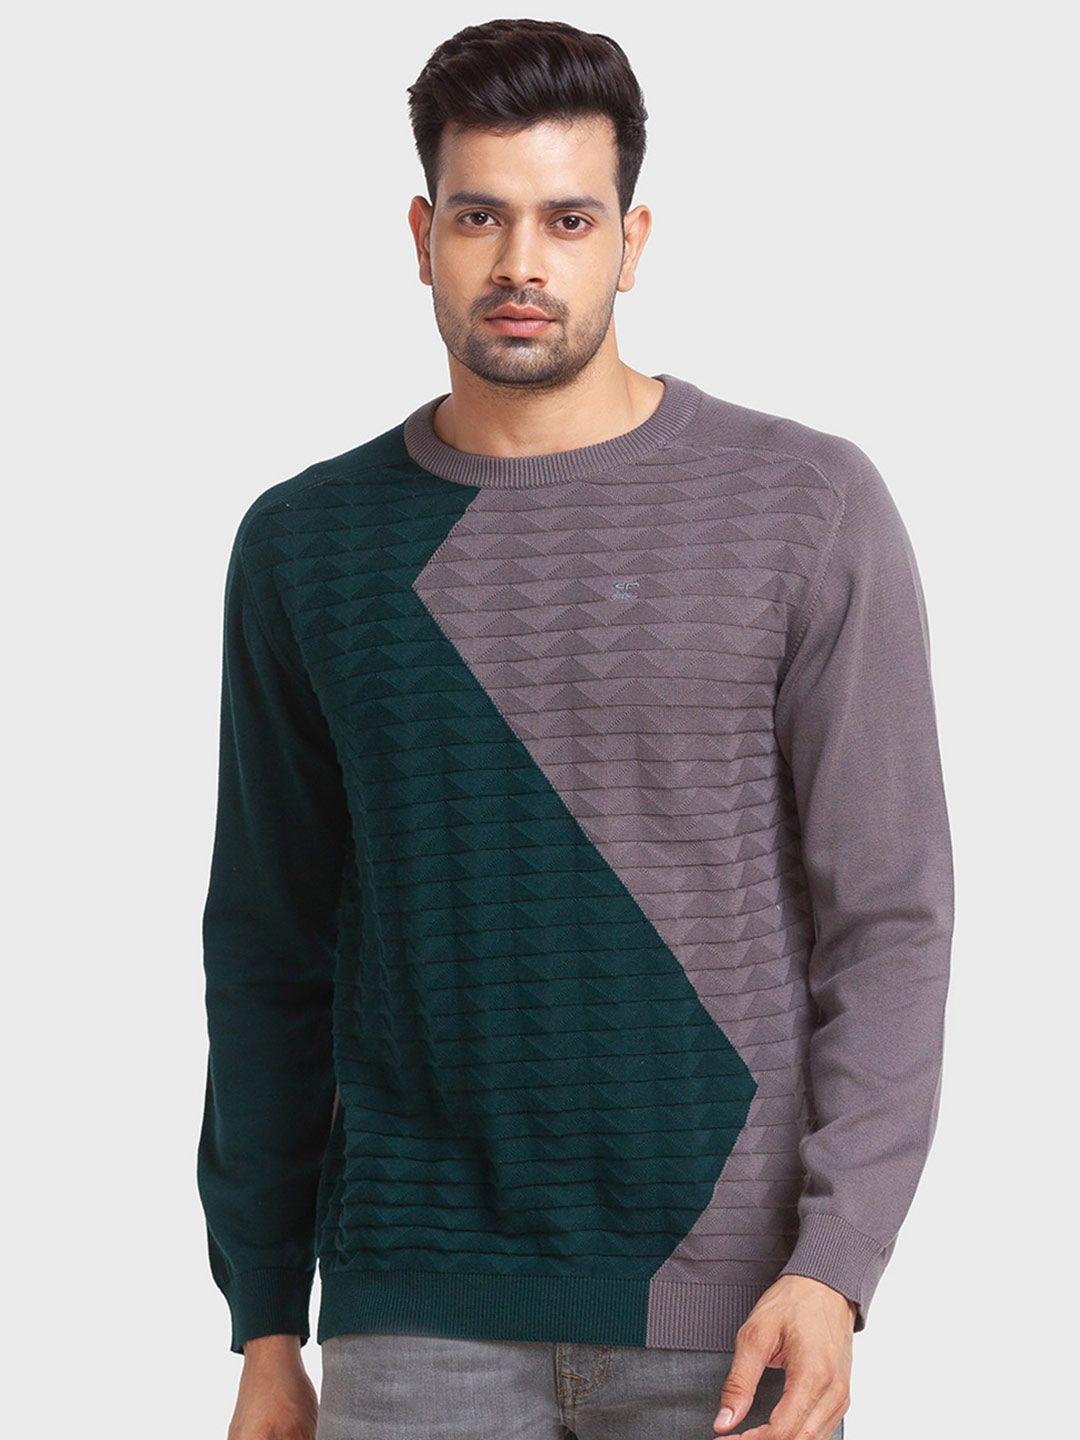 colorplus-men-plus-size-colourblocked-cotton-pullover